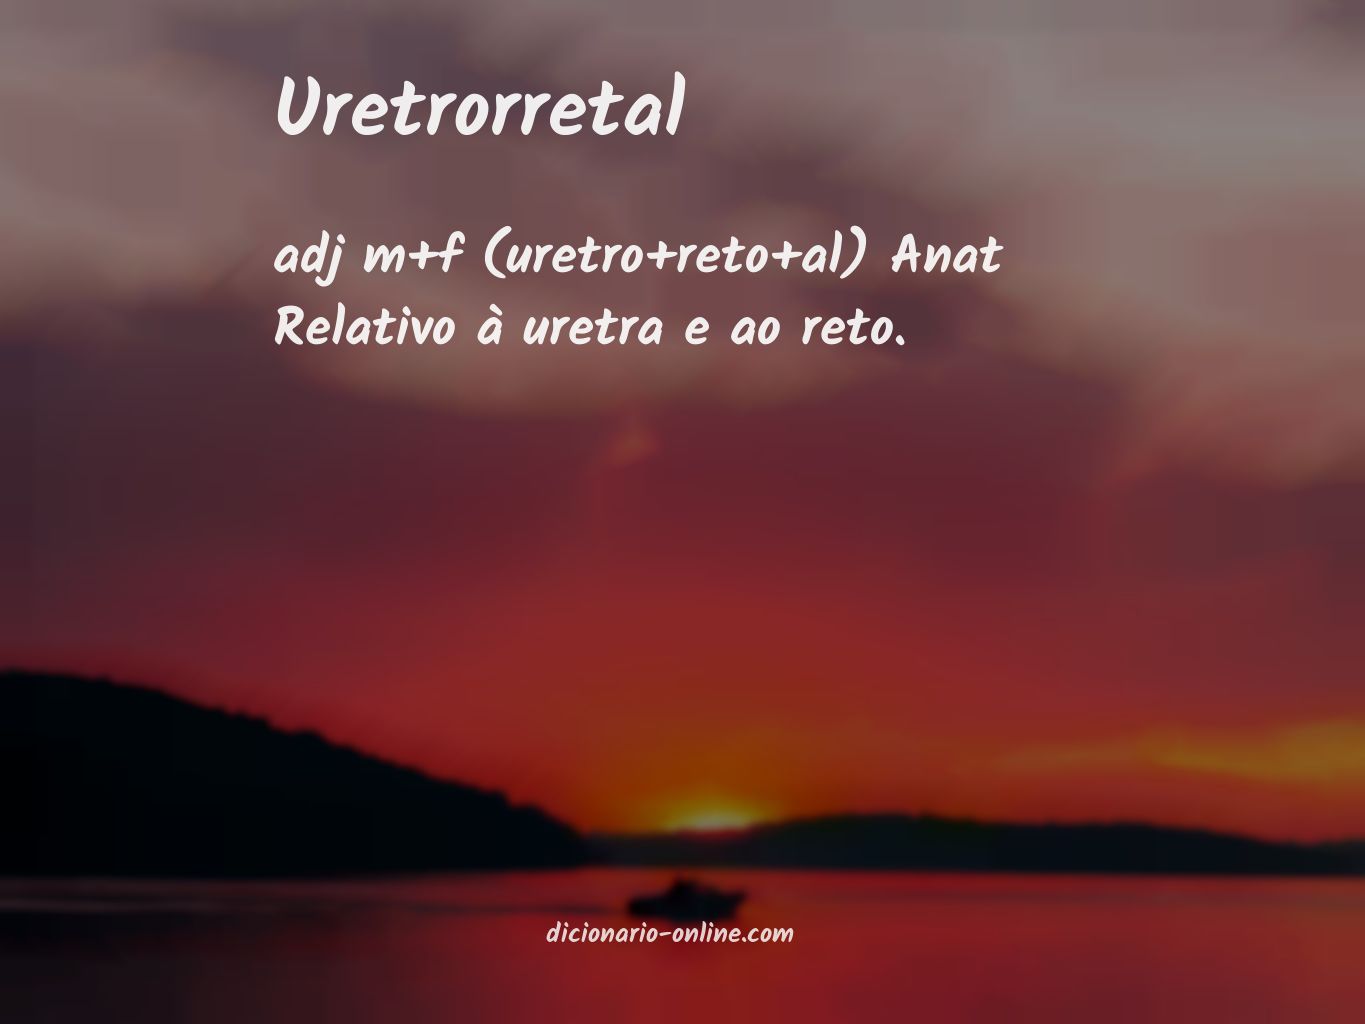 Significado de uretrorretal